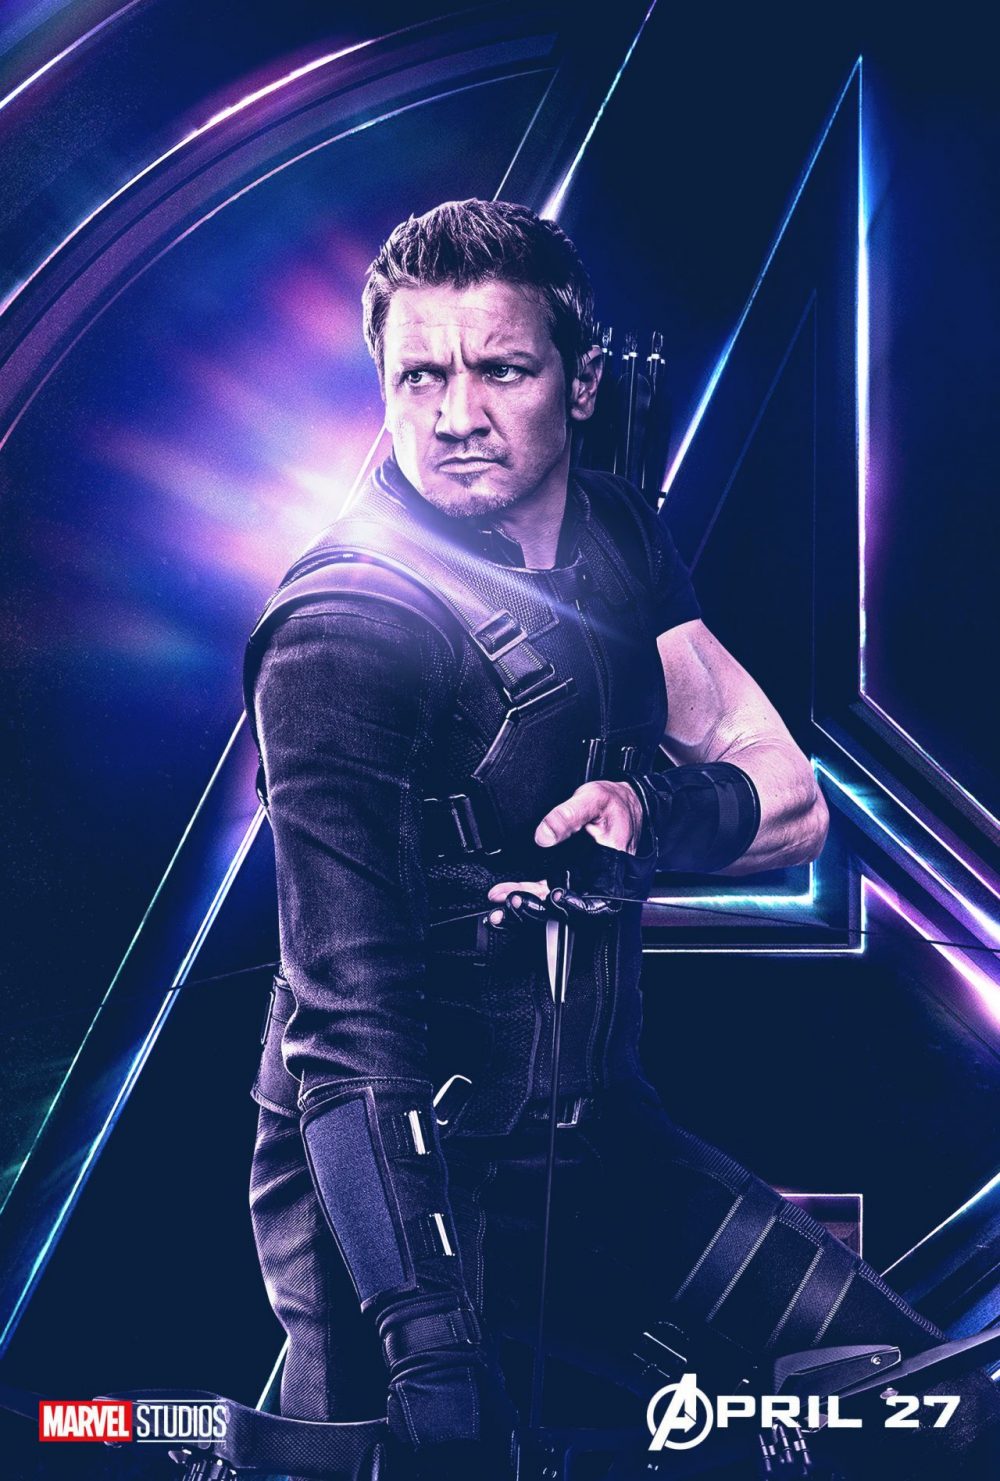 Poster chinh thuc cua Jeremy Renner trong avengers endgame e1596990810523 - Jeremy Renner: Siêu anh hùng nhiều tai tiếng của Marvel